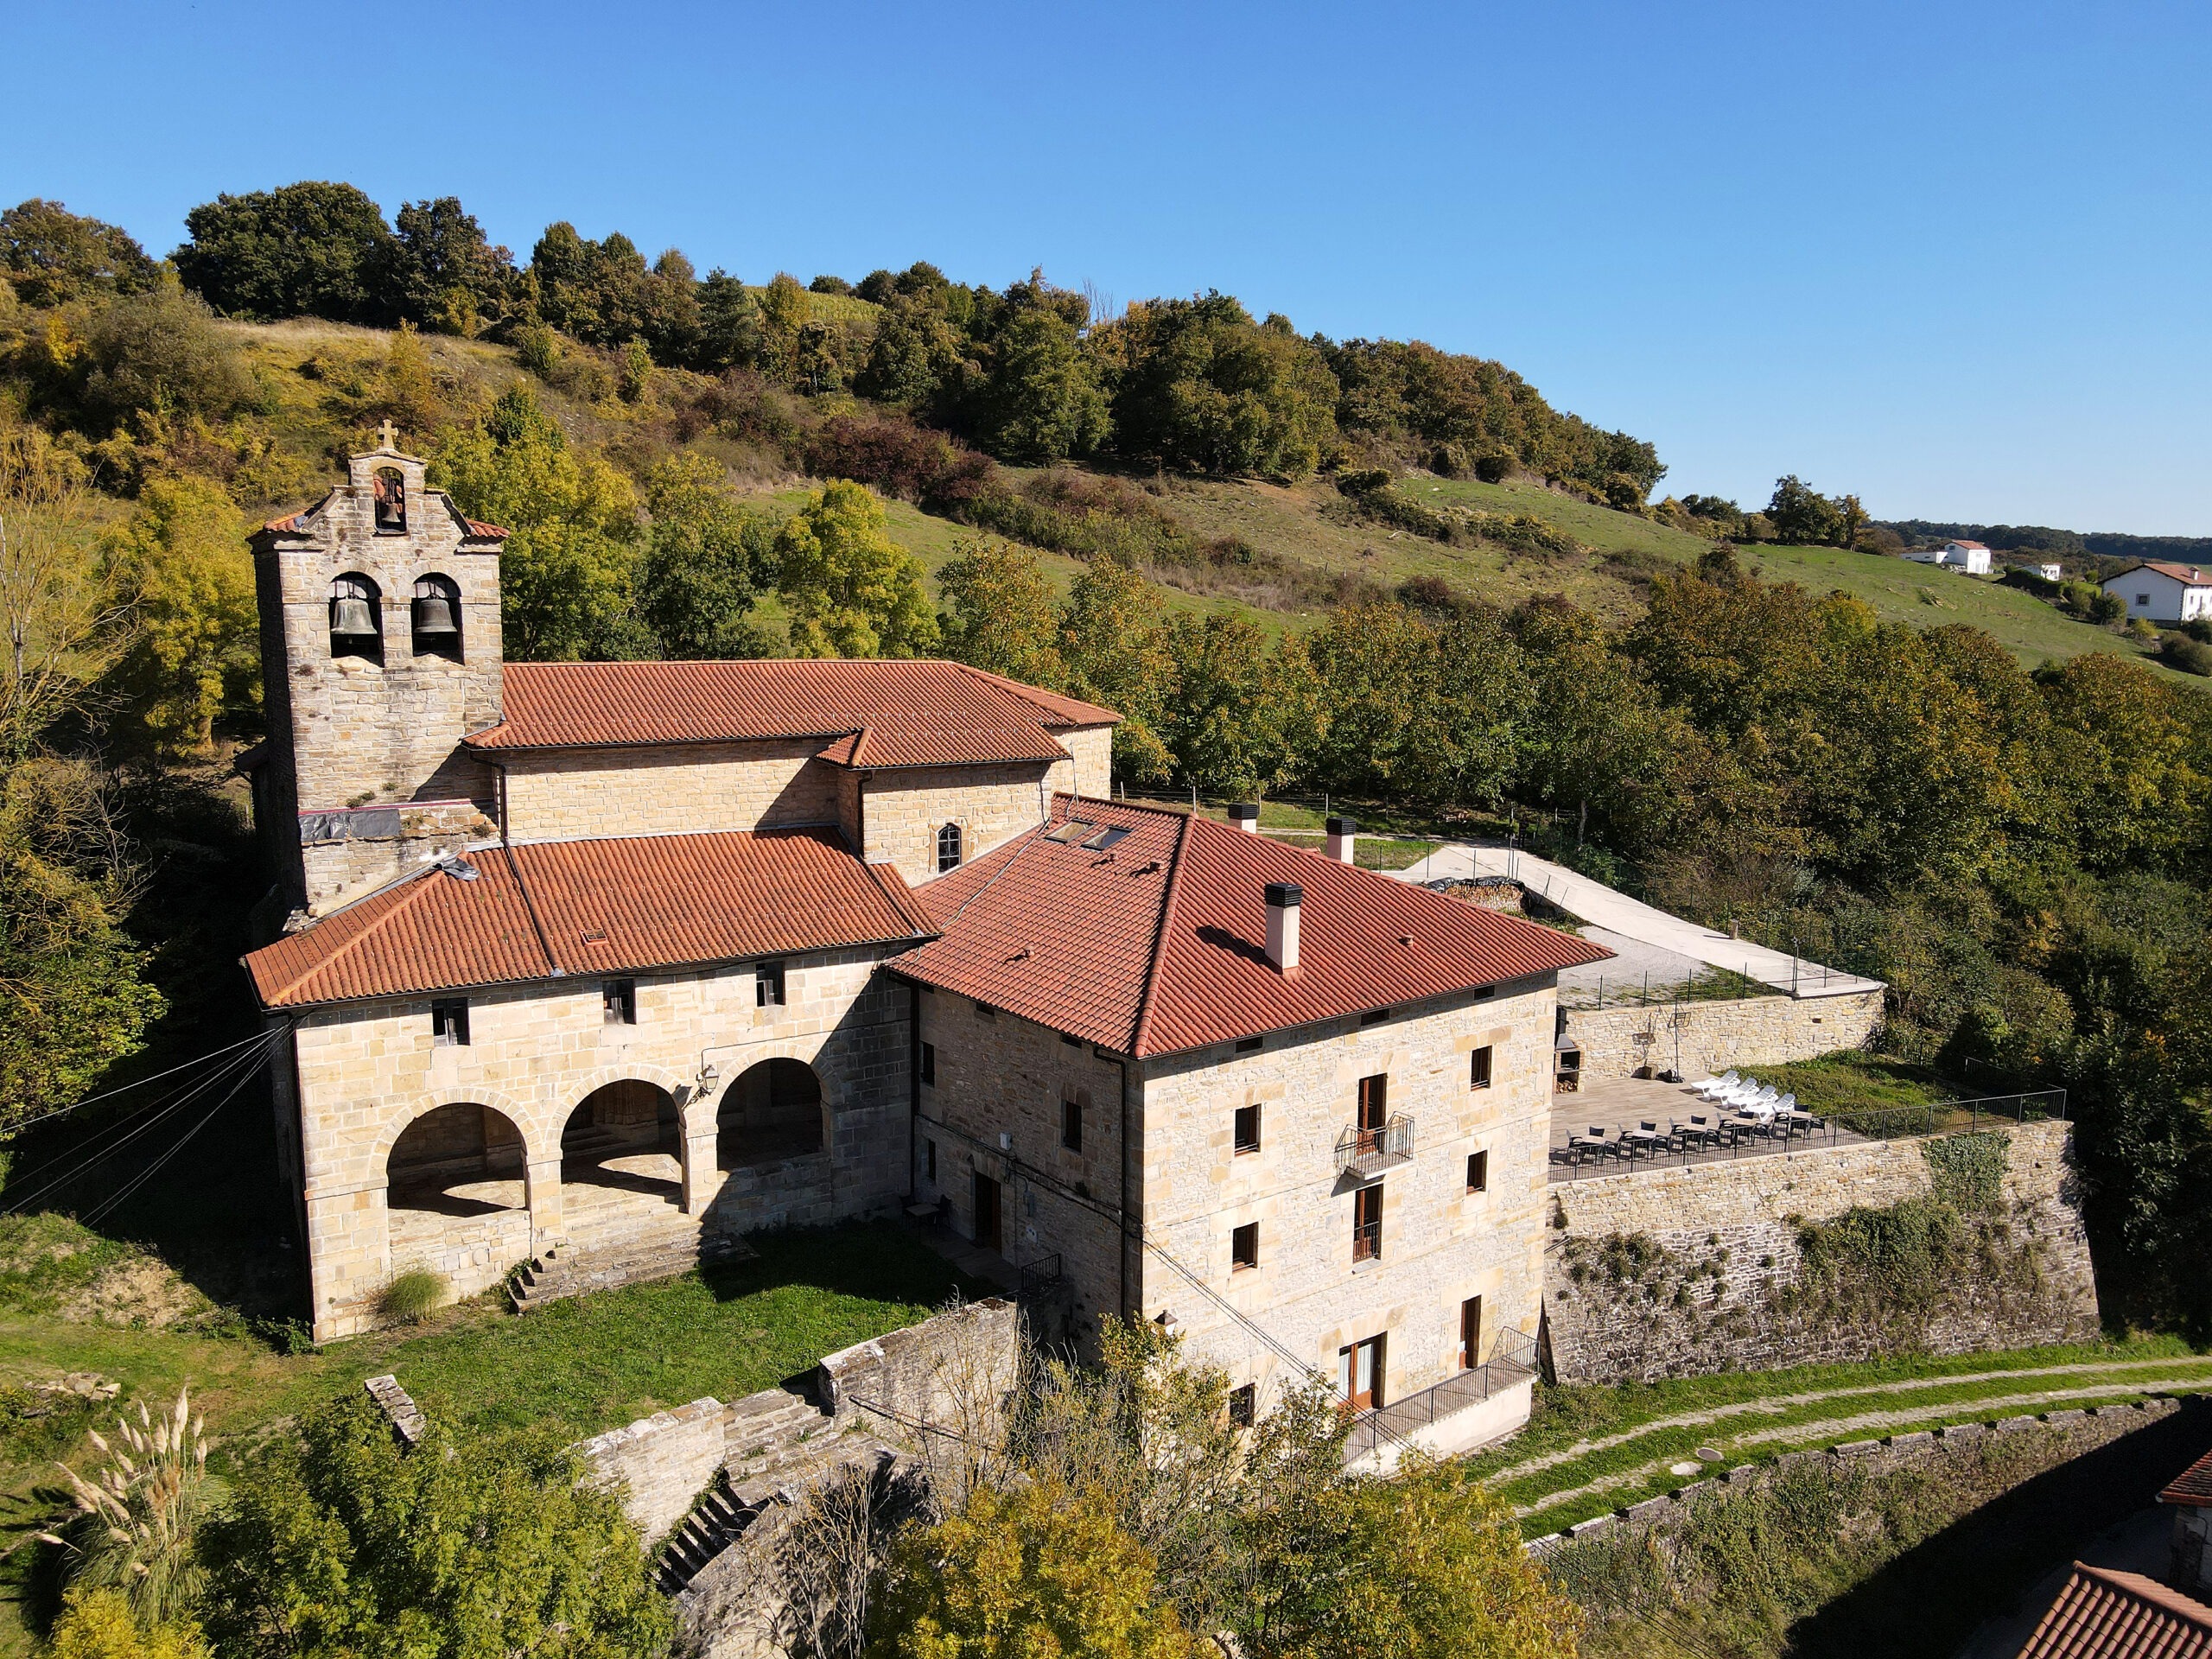 Tarifas y Reservas del alojamiento rural Palacio de Aralar, Navarra